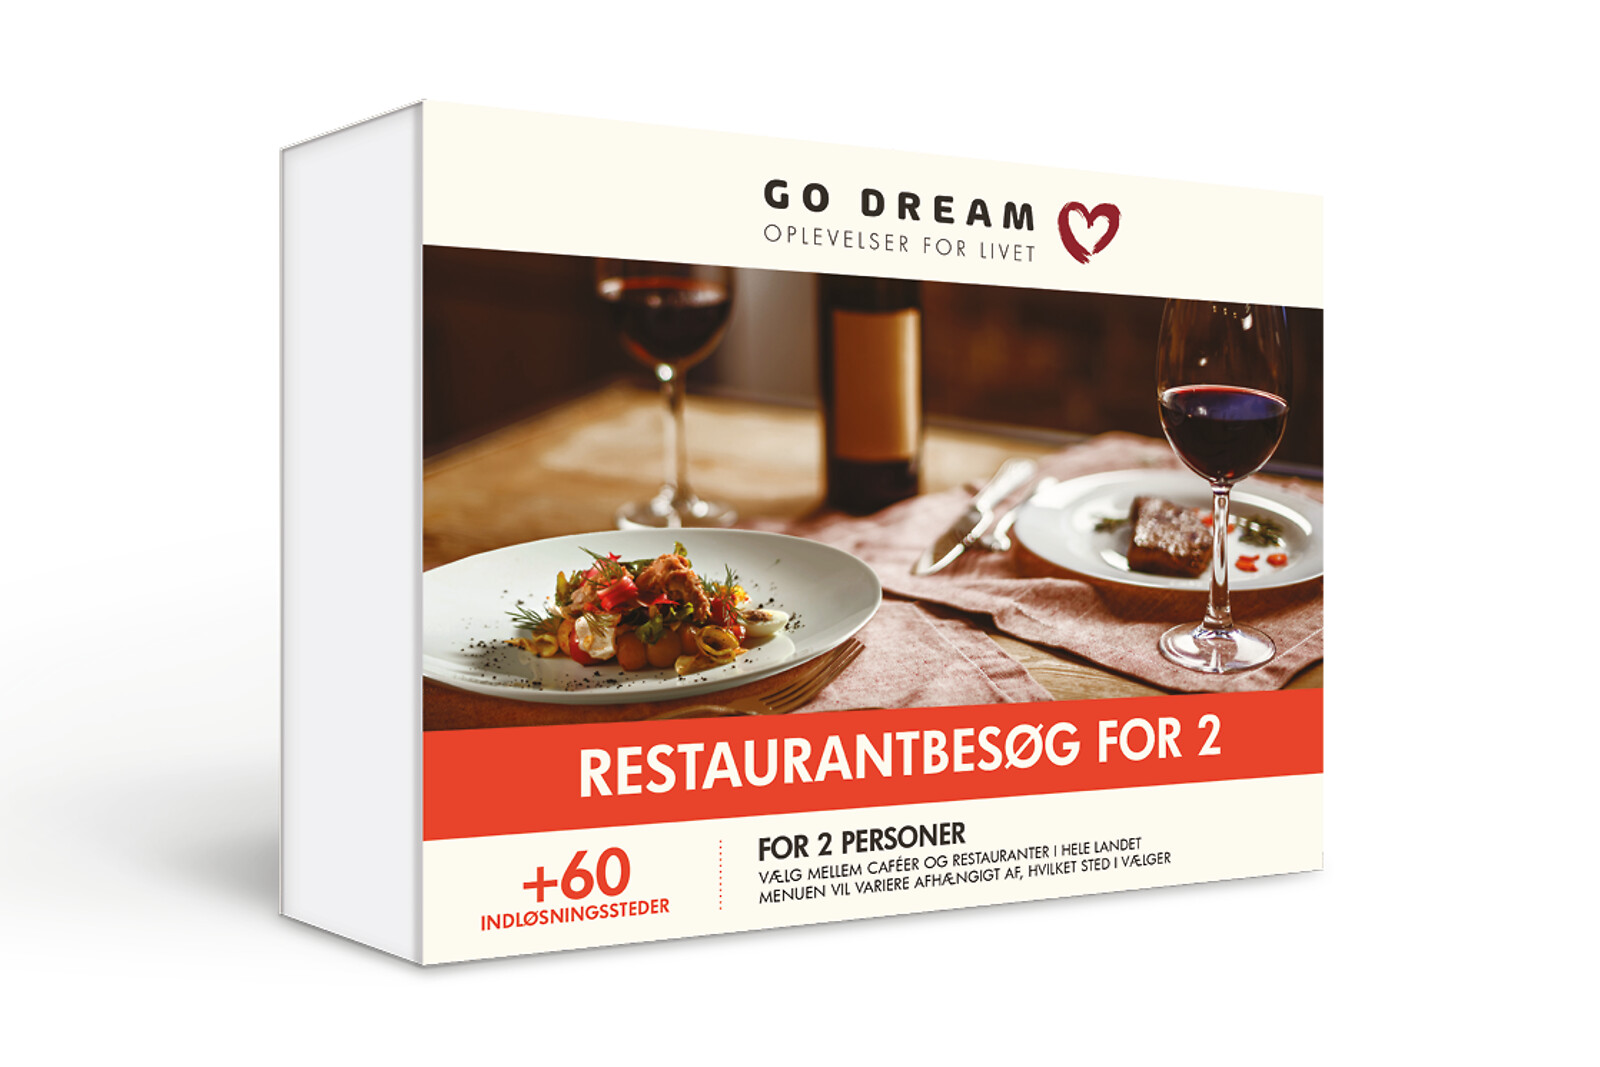 Se Restaurantbesøg For 2 - Mad og Gastronomi - GO DREAM hos GO DREAM DK